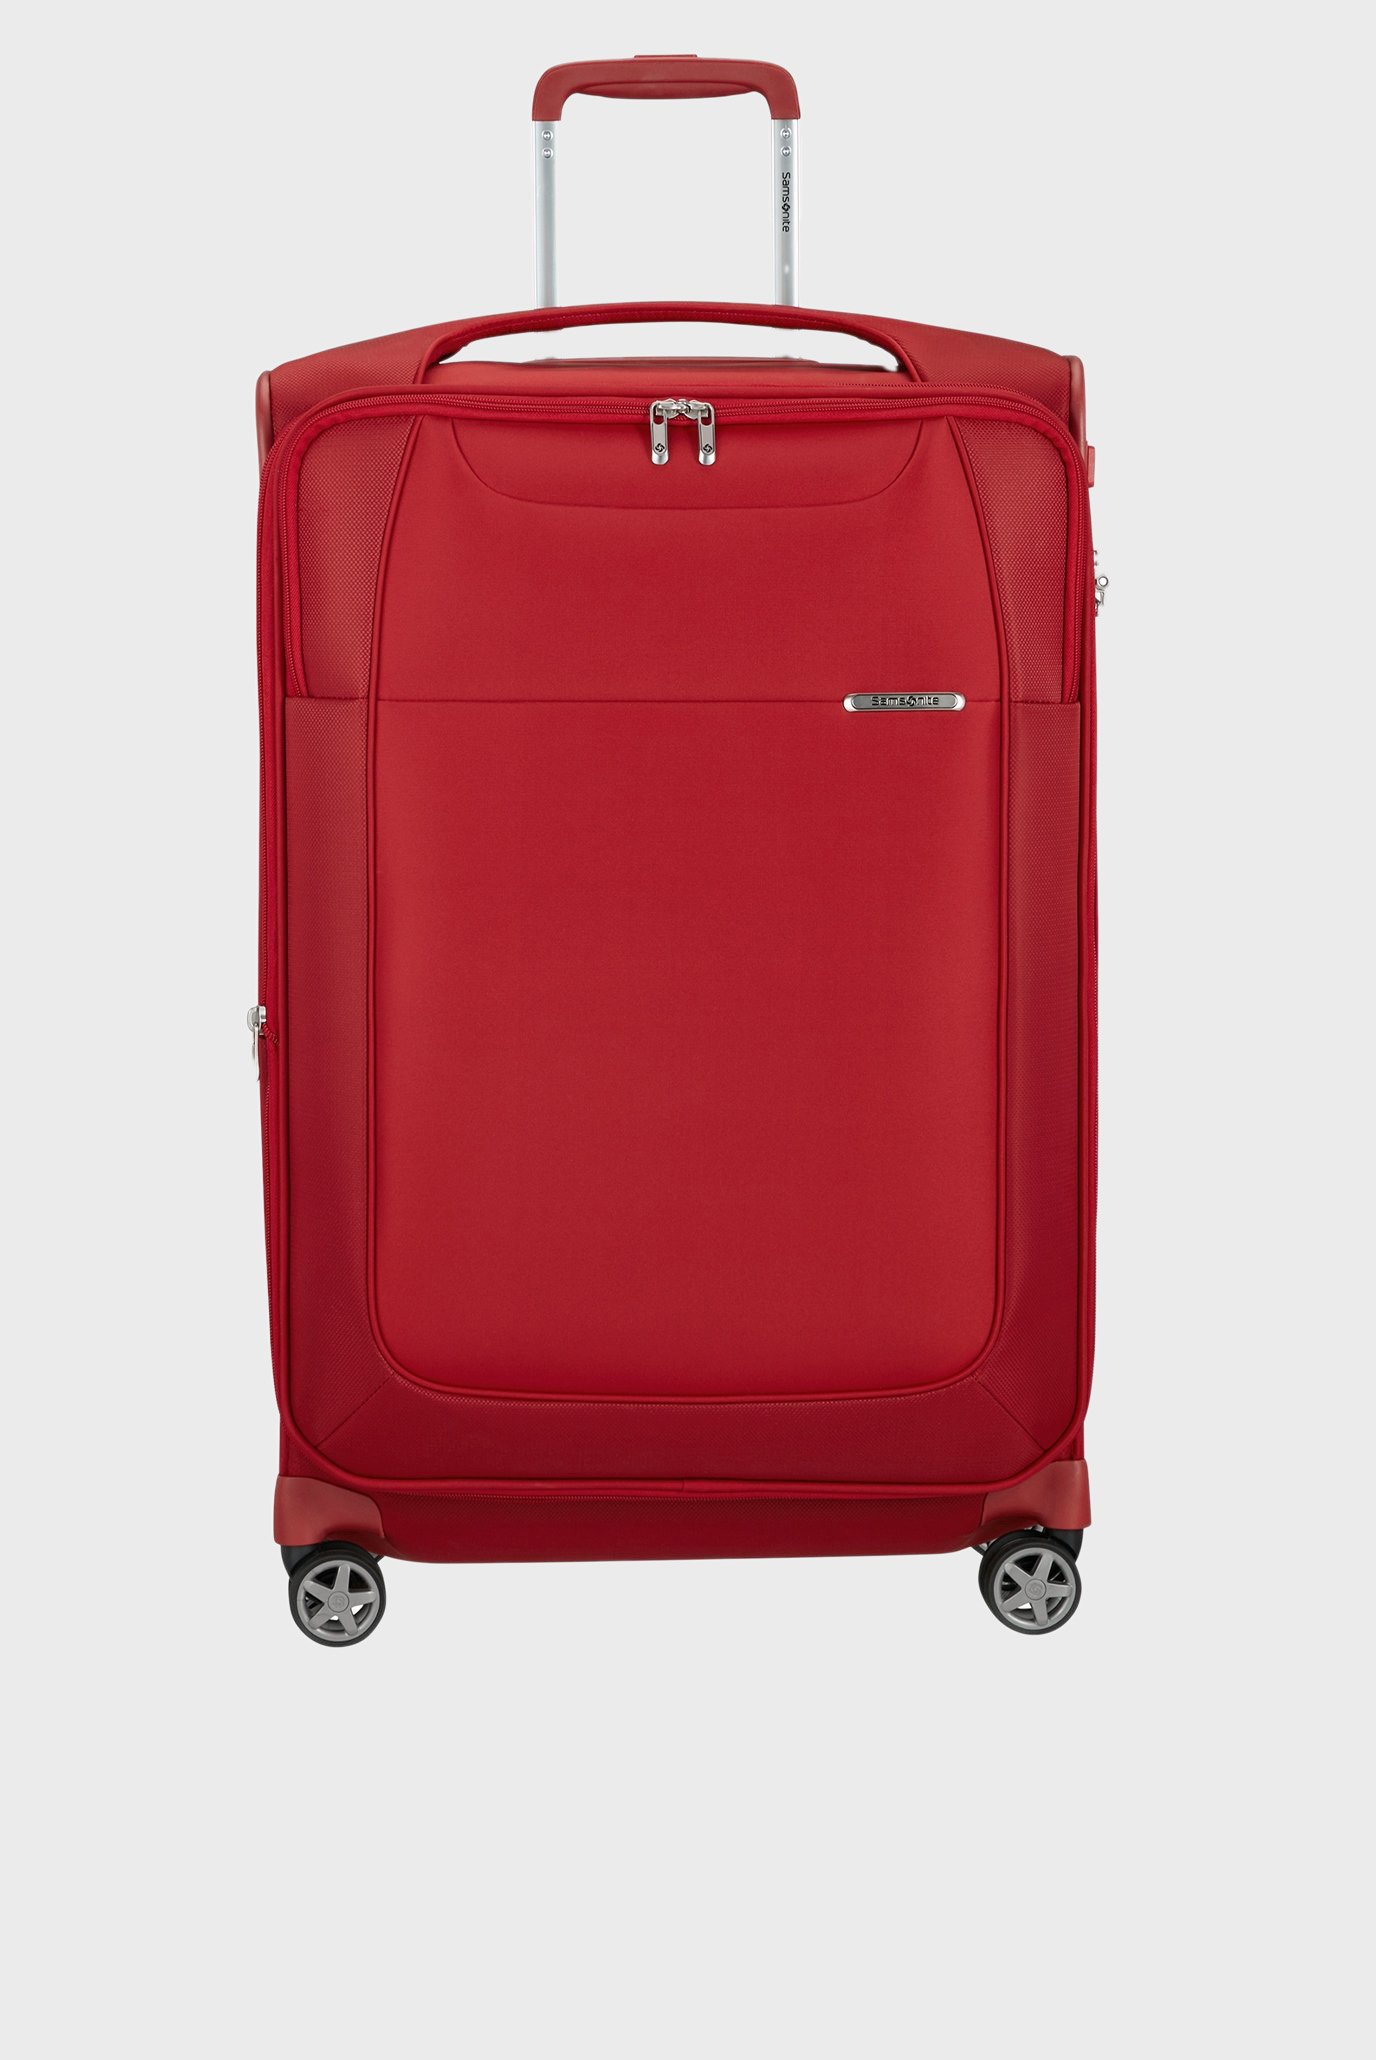 Червона валіза 71 см D'LITE RED 1